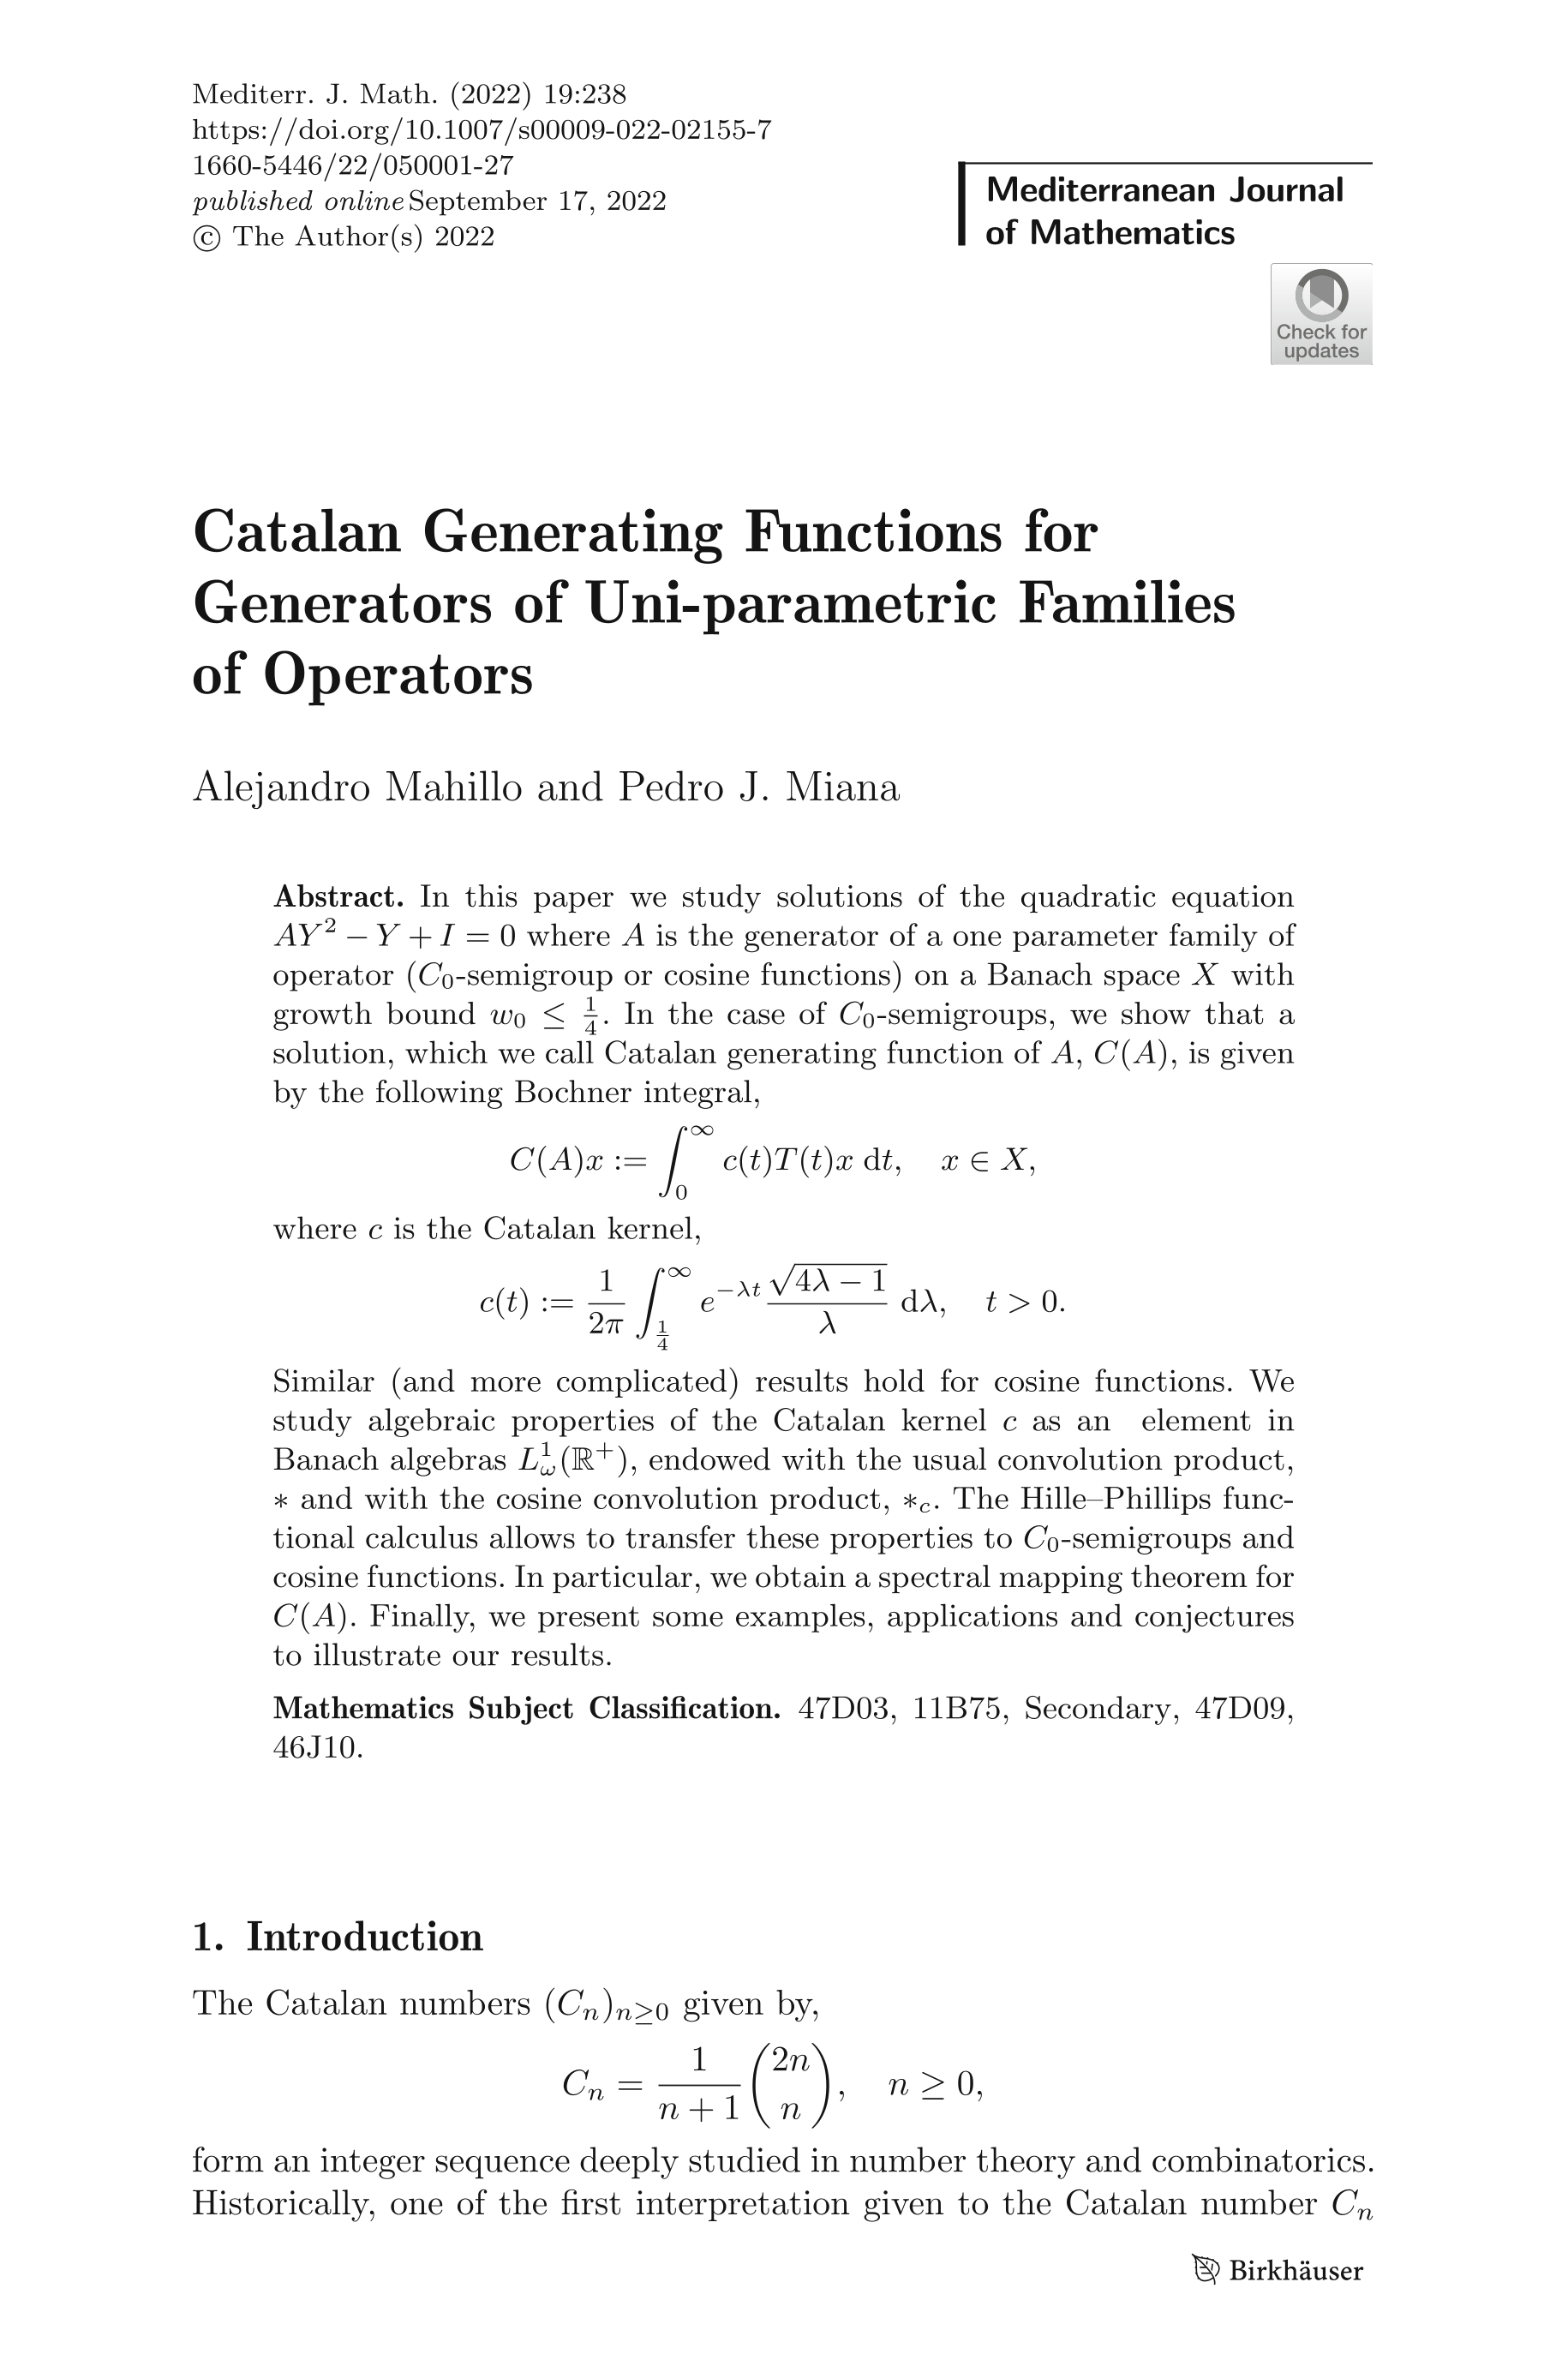 Catalan Generating Functions for Generators of Uni-parametric Families of Operators